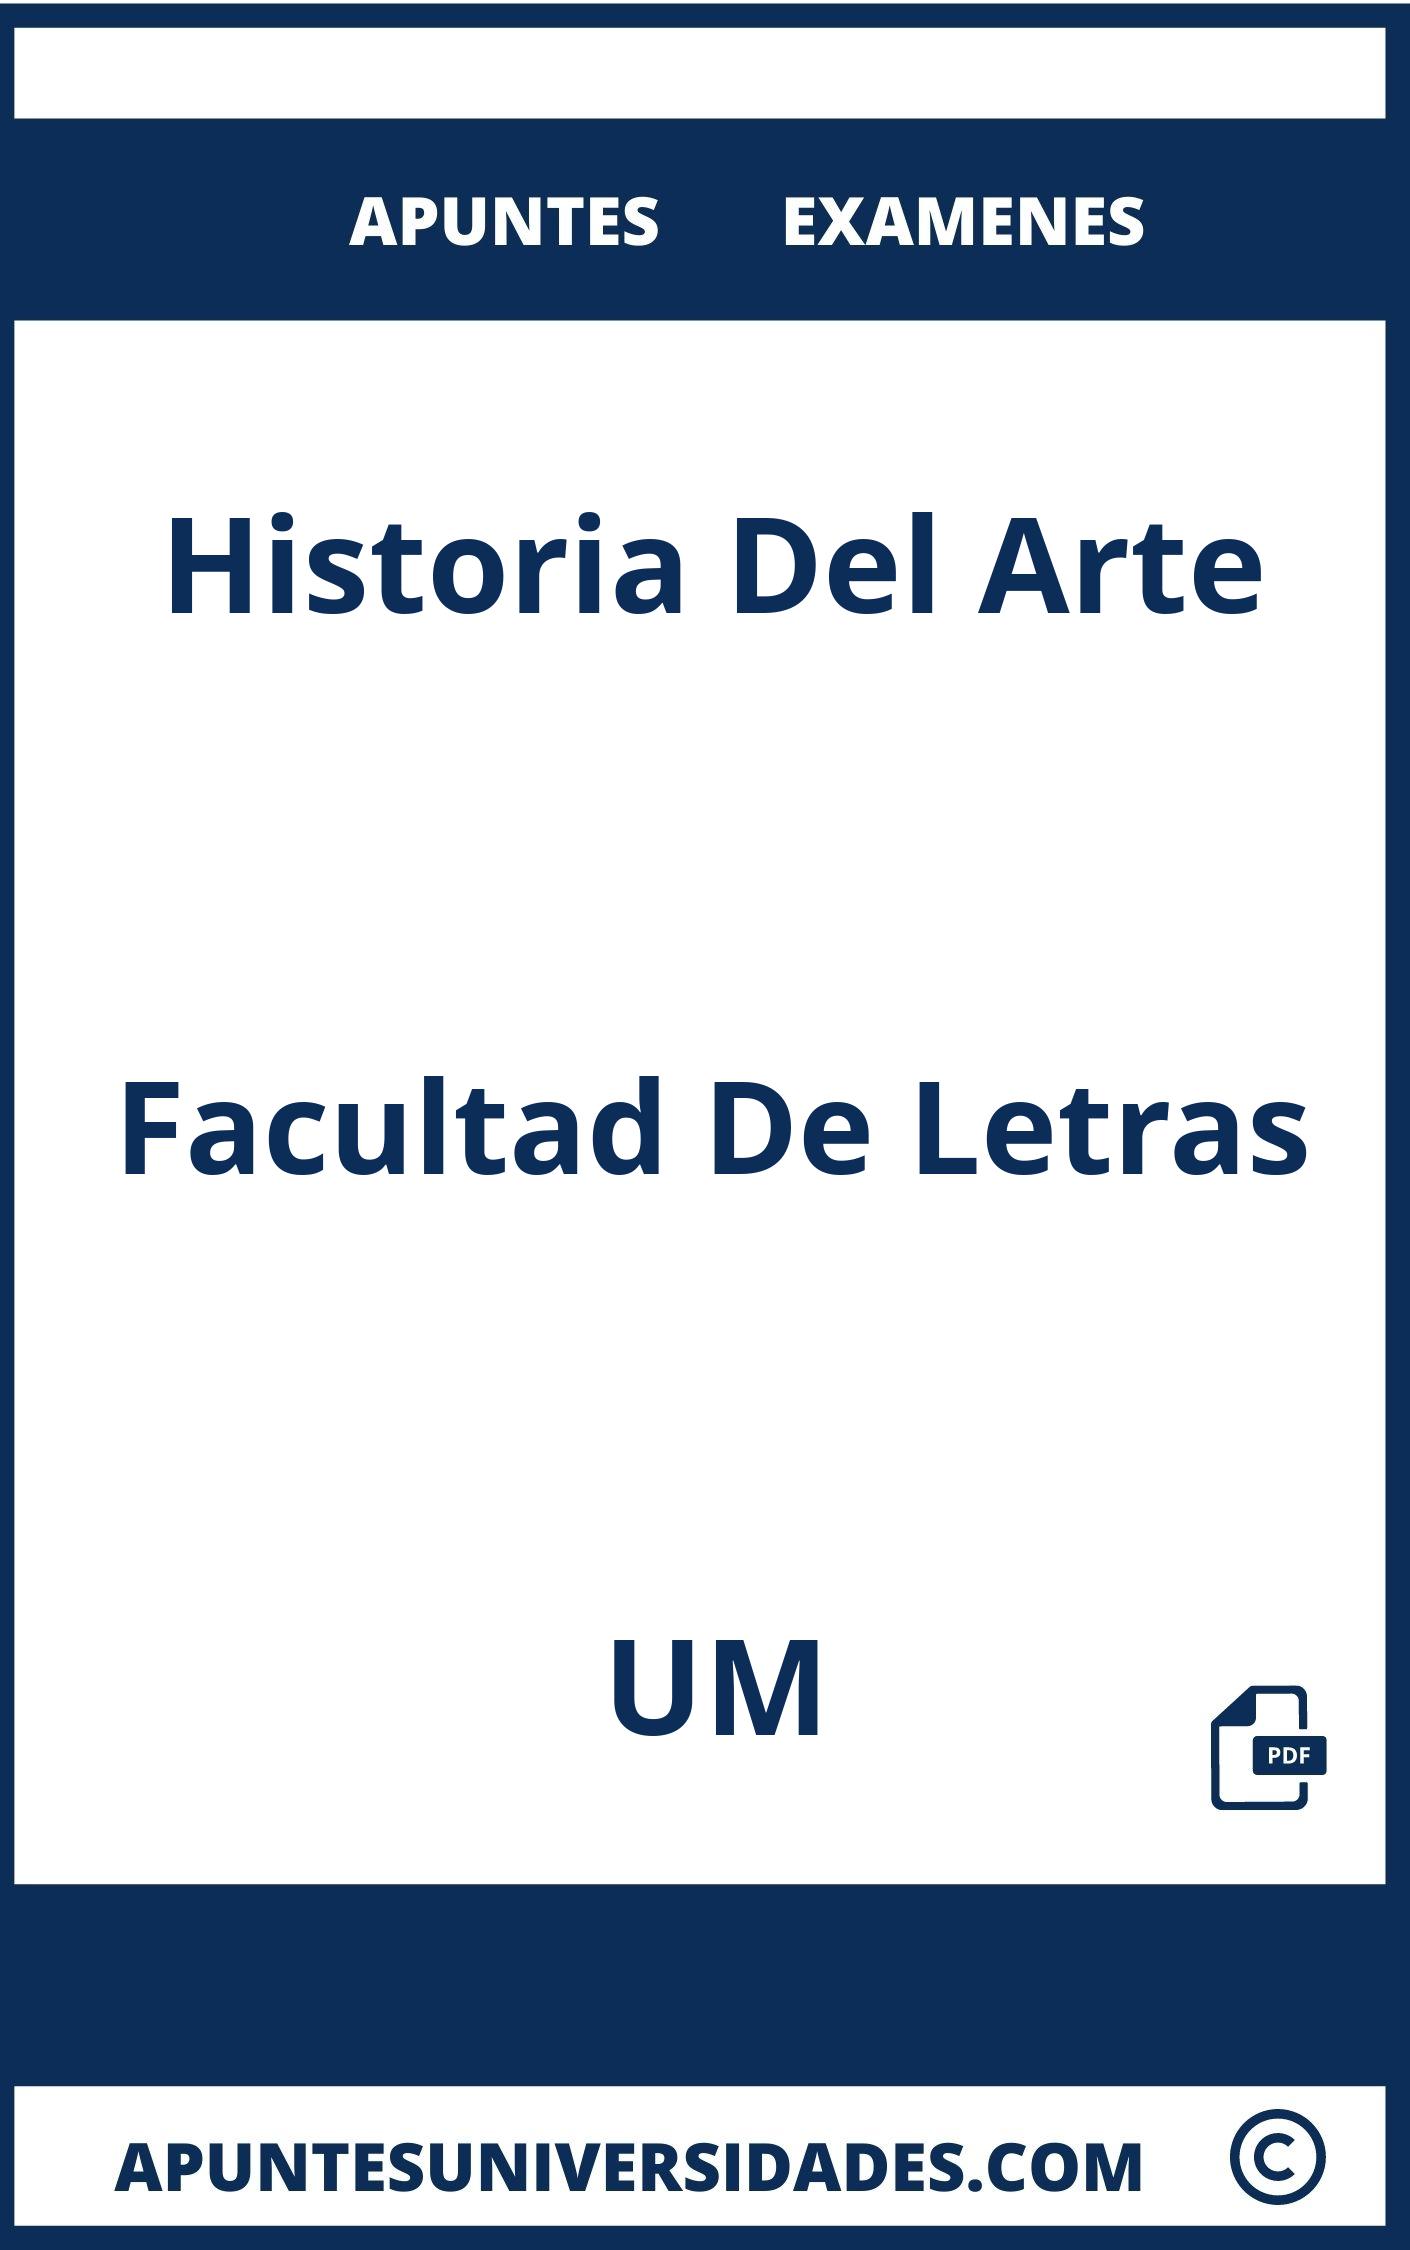 Apuntes y Examenes Historia Del Arte UM